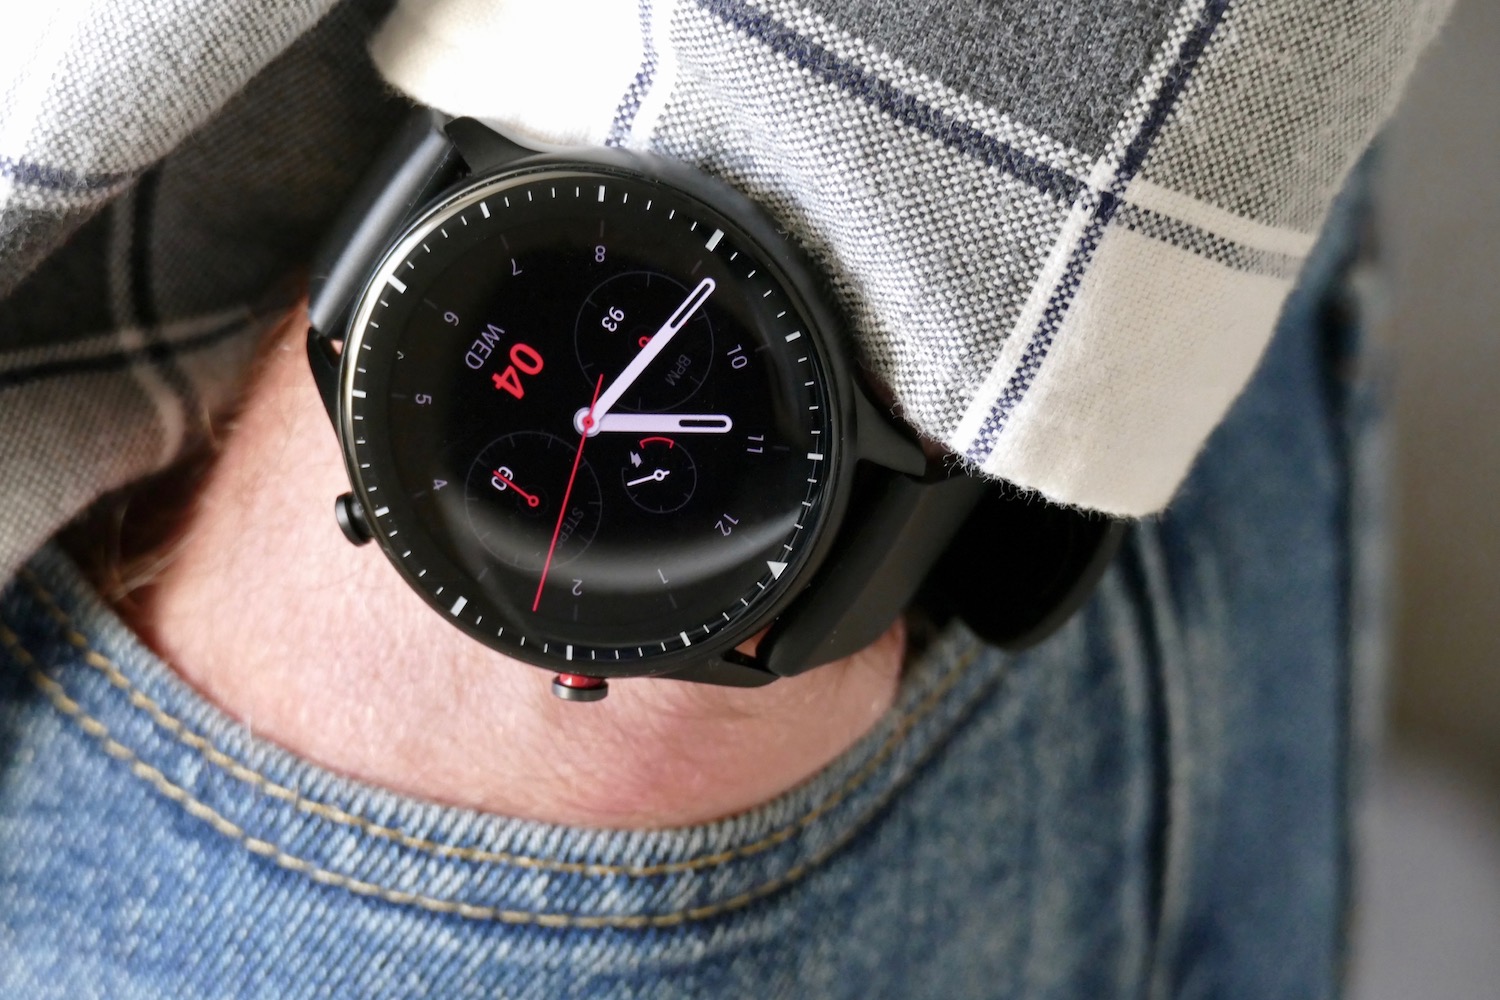 💥 Amazfit GTR 2 REVIEW en ESPAÑOL ⌚El smartwatch más completo de Amazfit 